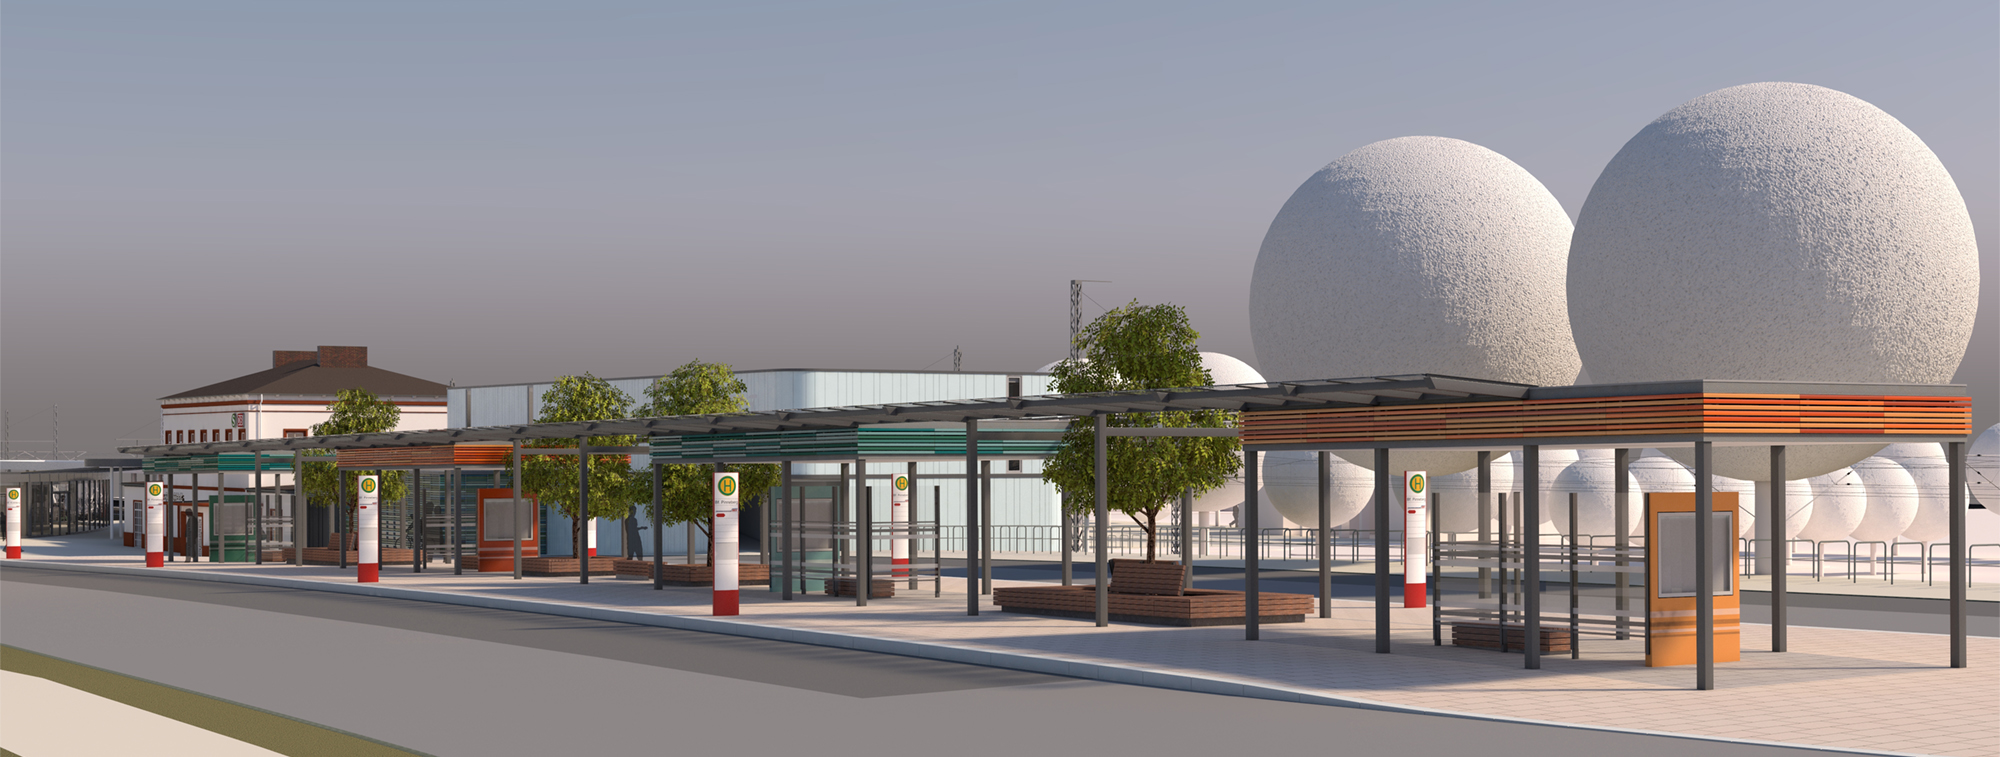 Blick auf den neuen Busbahnhof mit dem saniertem Empfangsgebäude und Fahrradparkhaus im Hintergrund (Visualisierung)